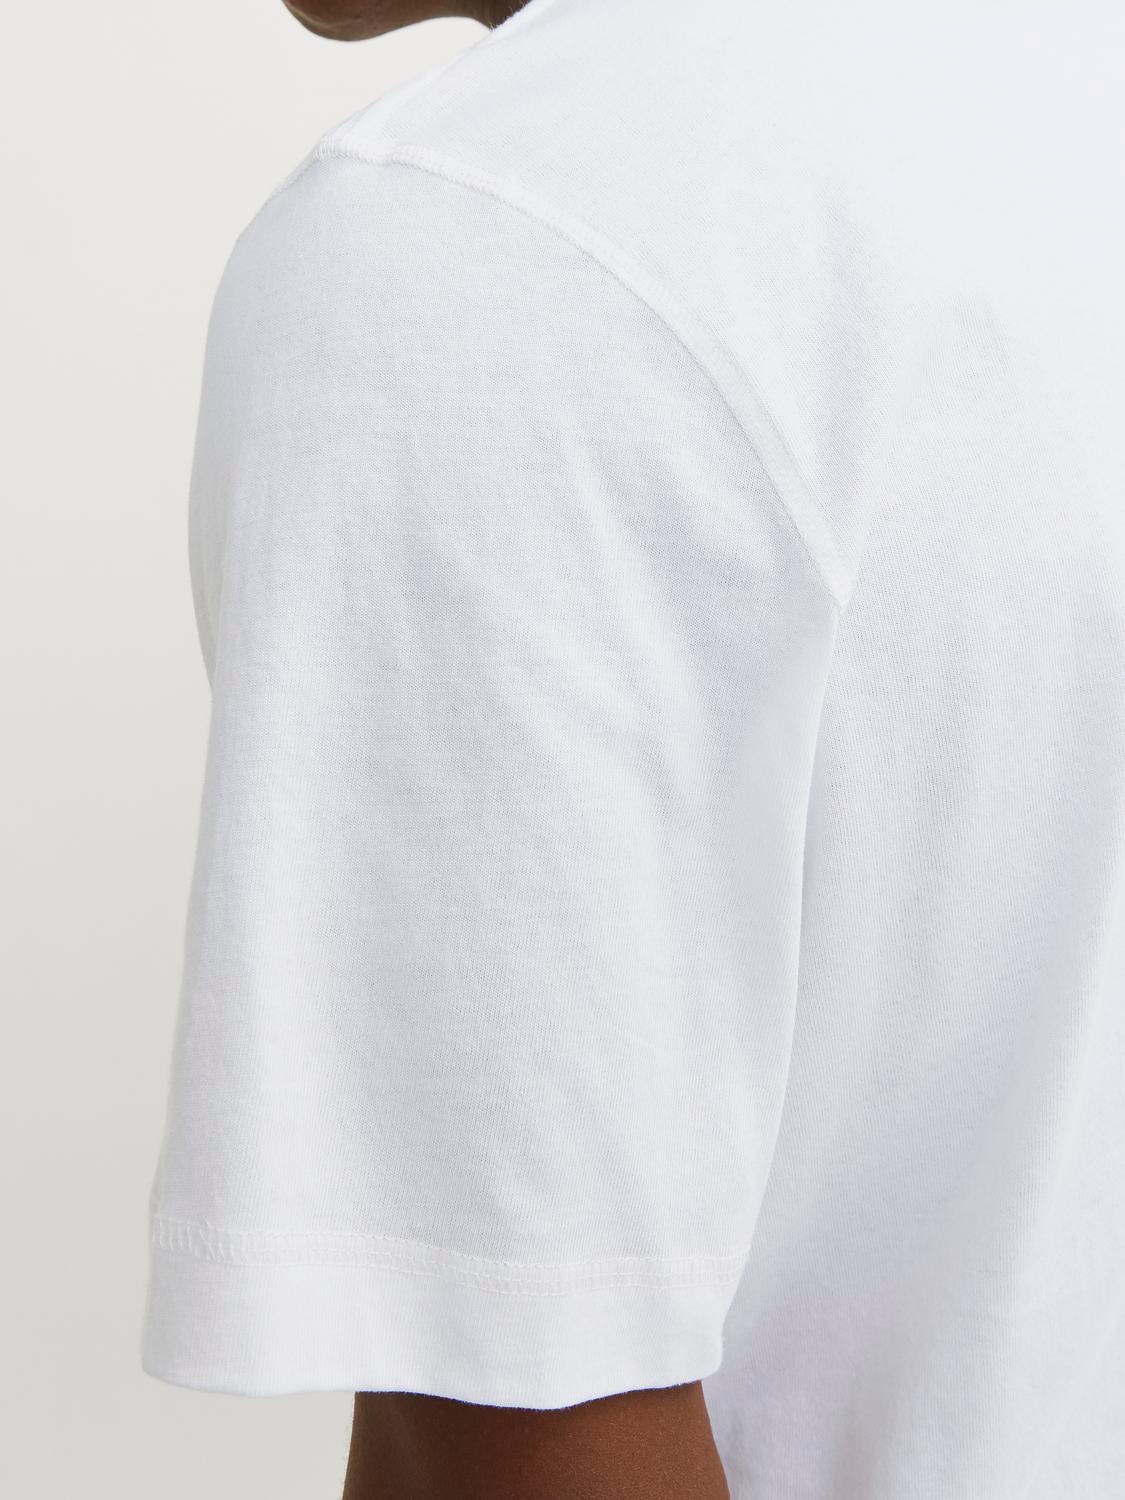 Jack & Jones Gedruckt Rundhals T-shirt -Bright White - 12256406